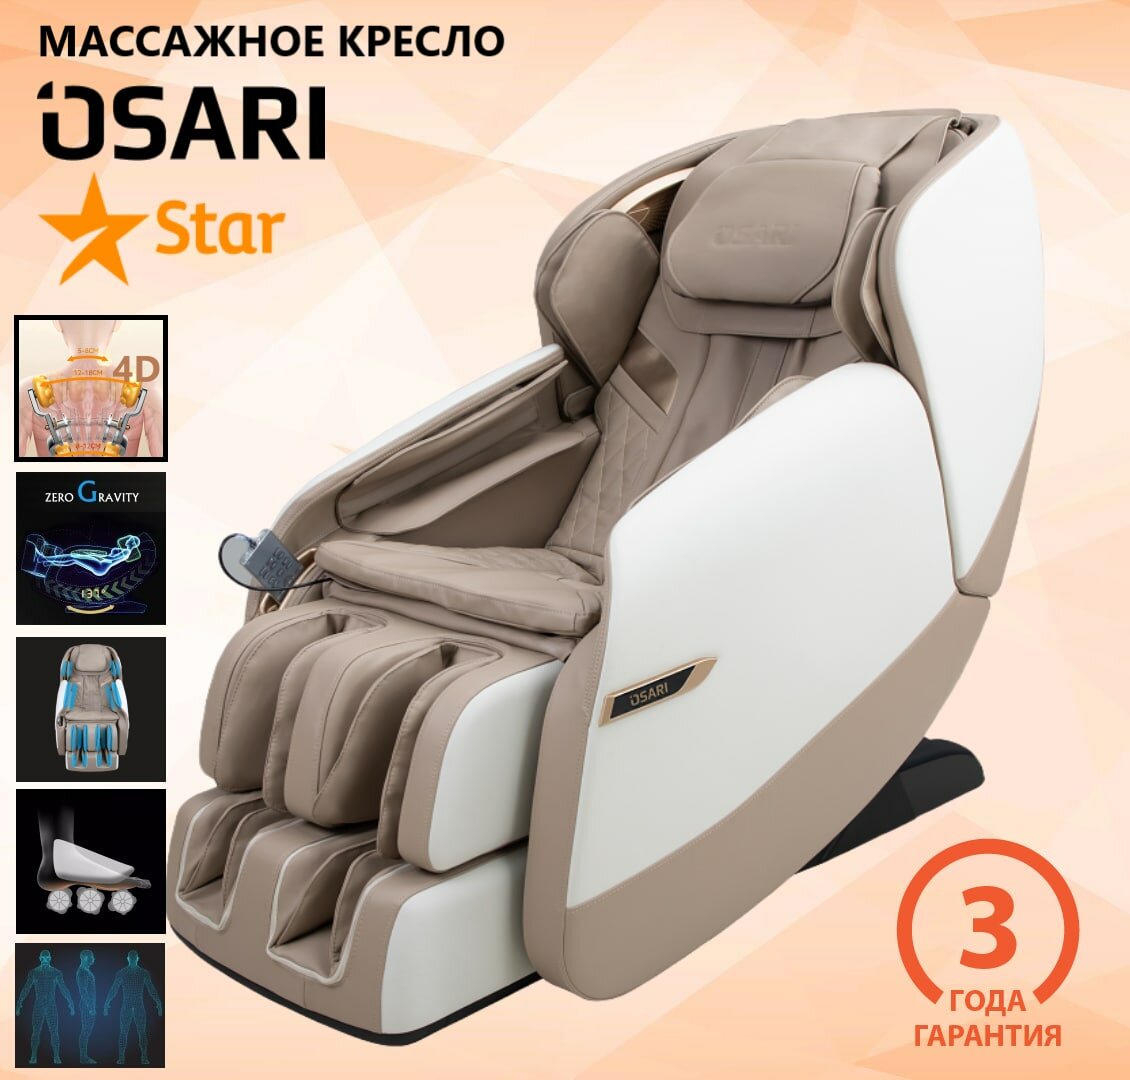 Массажное кресло OSARI STAR 4D в бежевом цвете